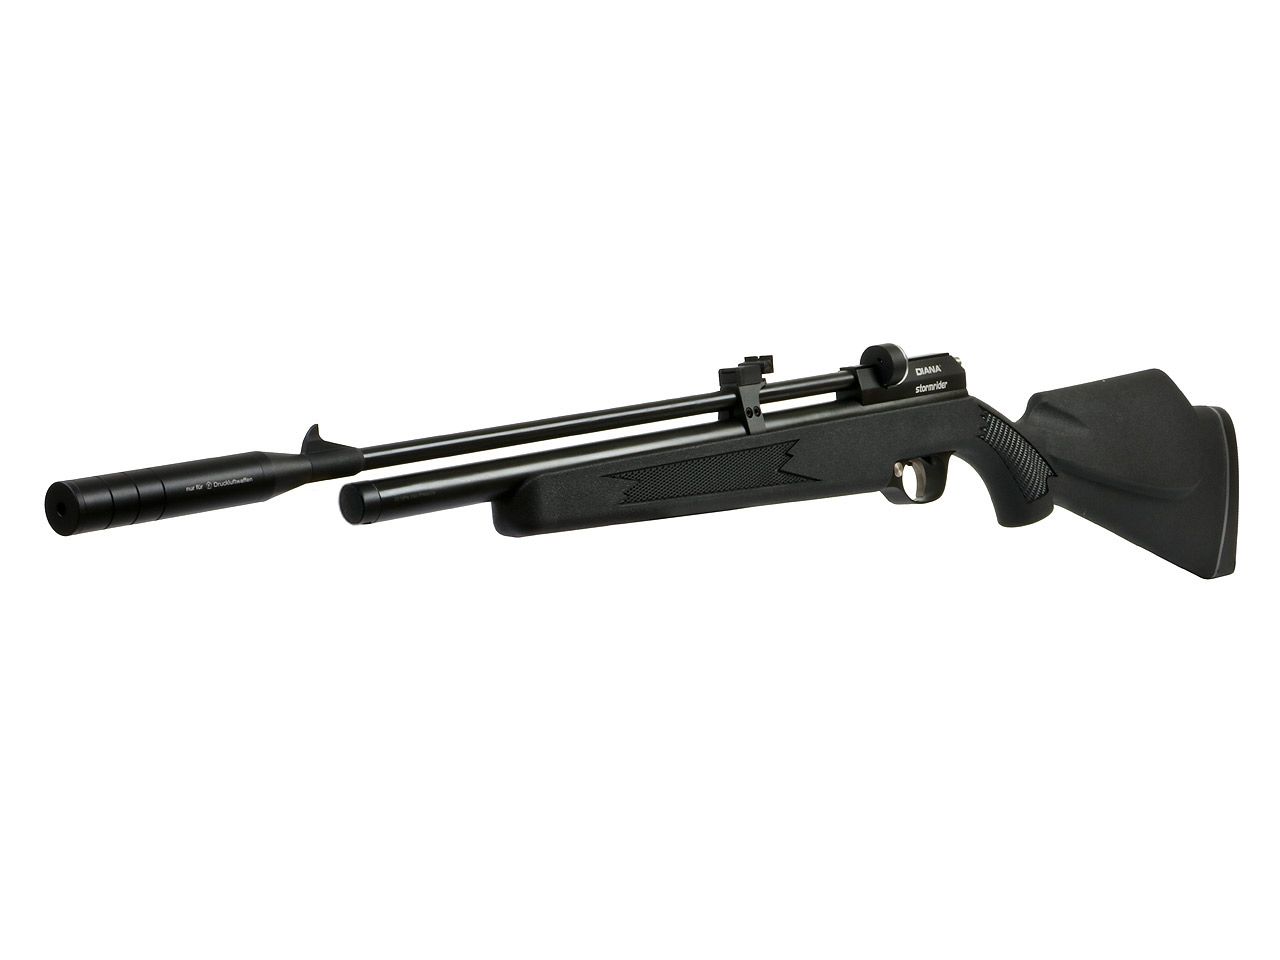 Pressluftgewehr Diana Stormrider Black schwarzer Kunststoffschaft mit Regulator 9 Schuss Magazin Schalldämpfer Kaliber 4,5 mm (P18)